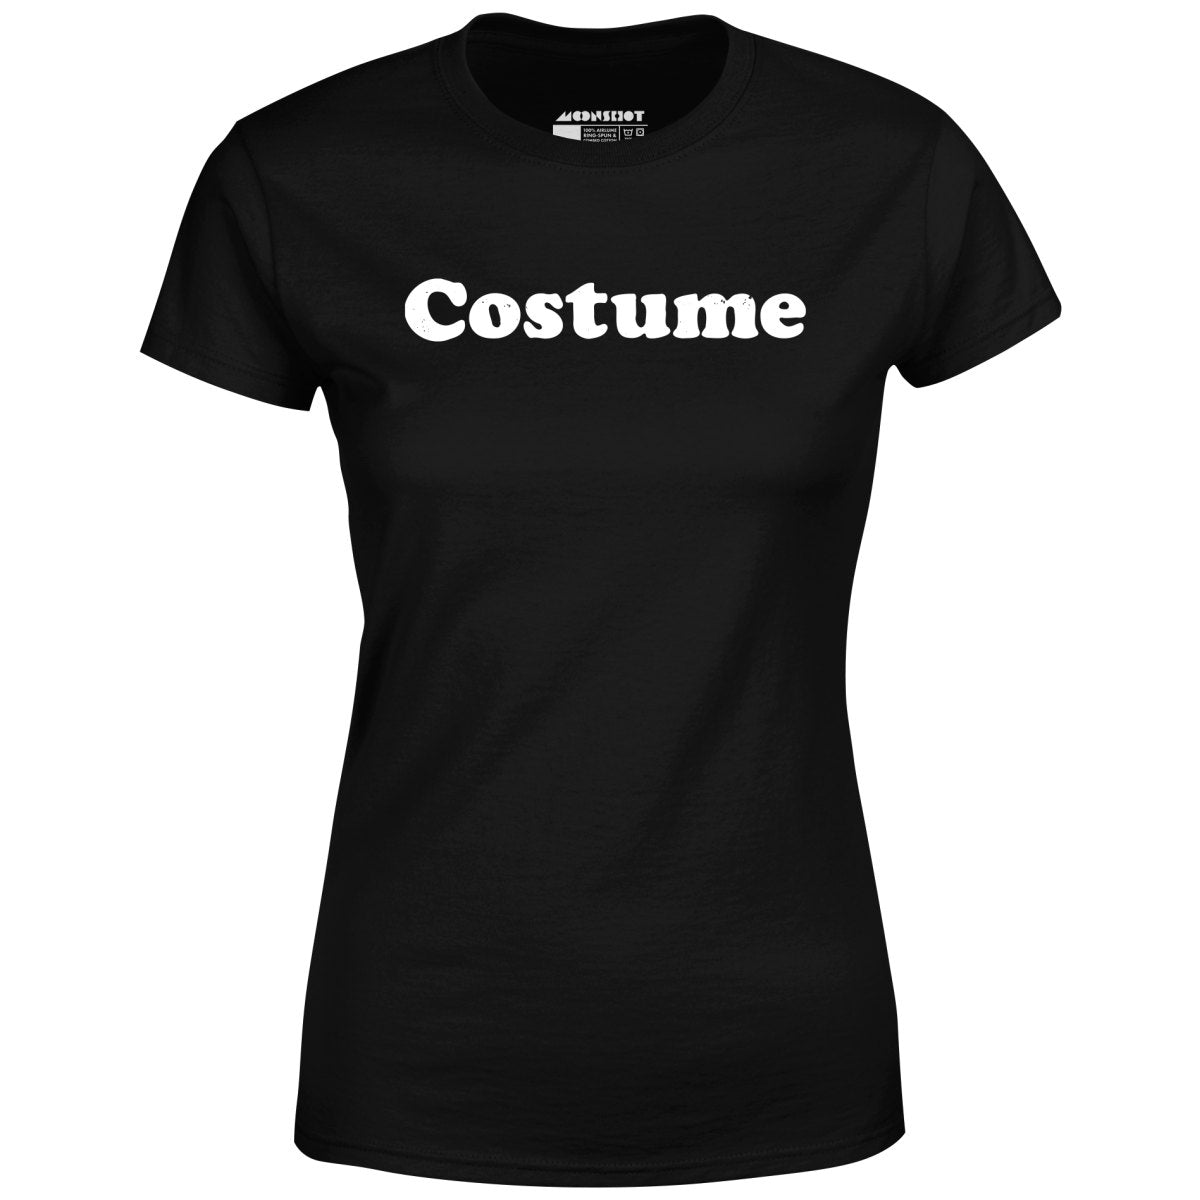 Costume - Women's T-Shirt